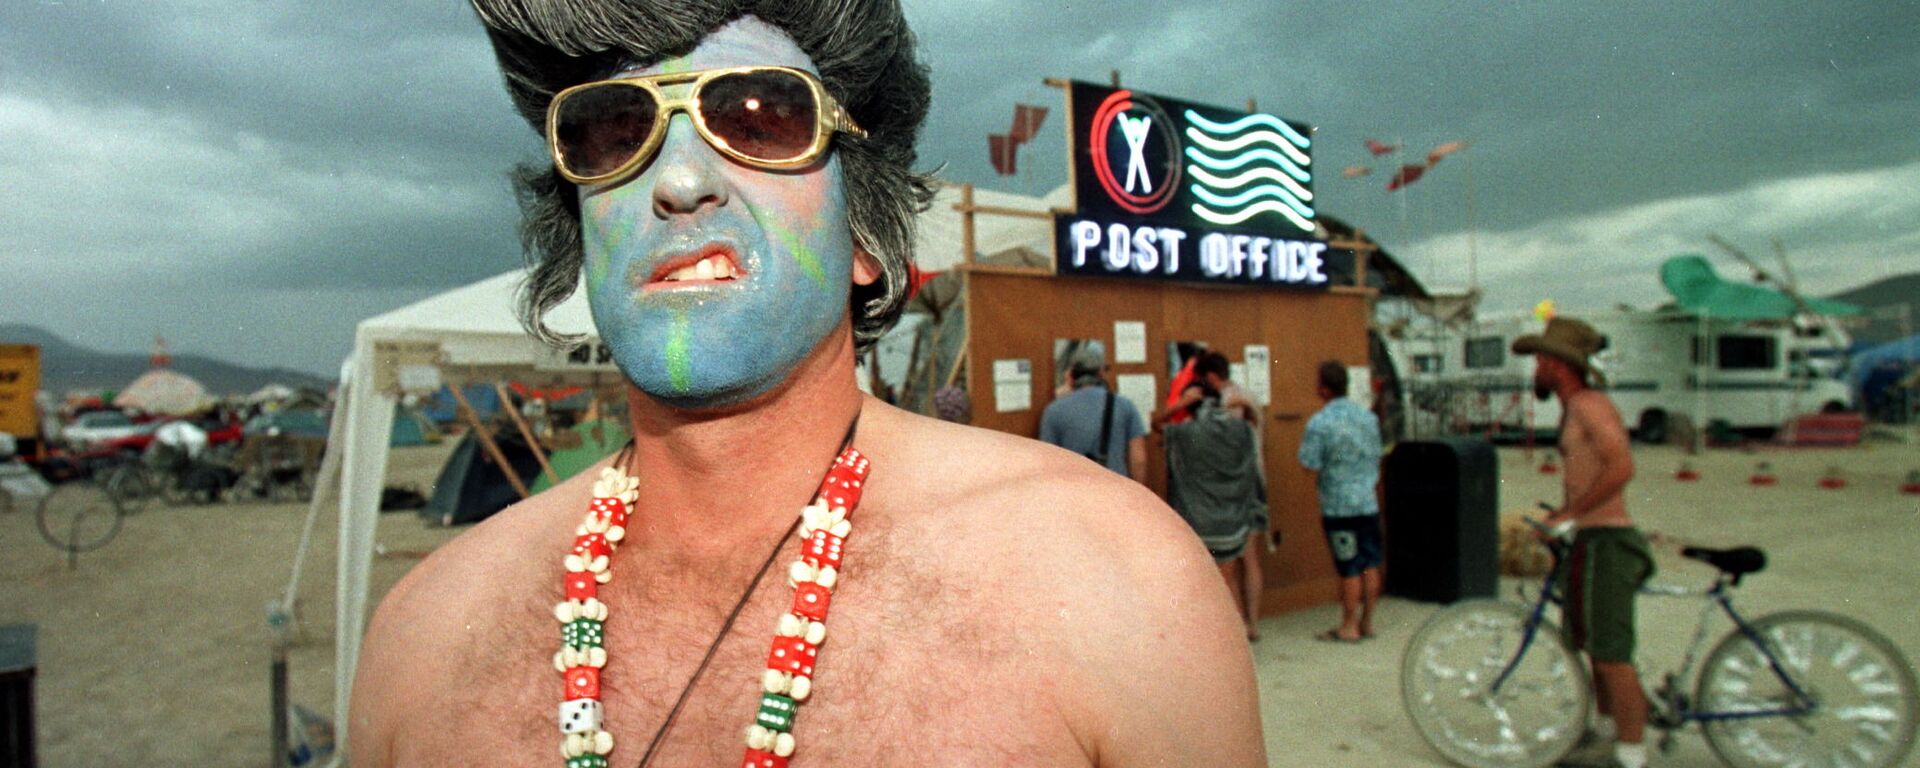 Марк из Лас-Вегаса, одетый как Элвис Пресли, на фестивале Burning Man в пустыне Блэк-Рок на севере Невады - Sputnik Армения, 1920, 16.08.2021